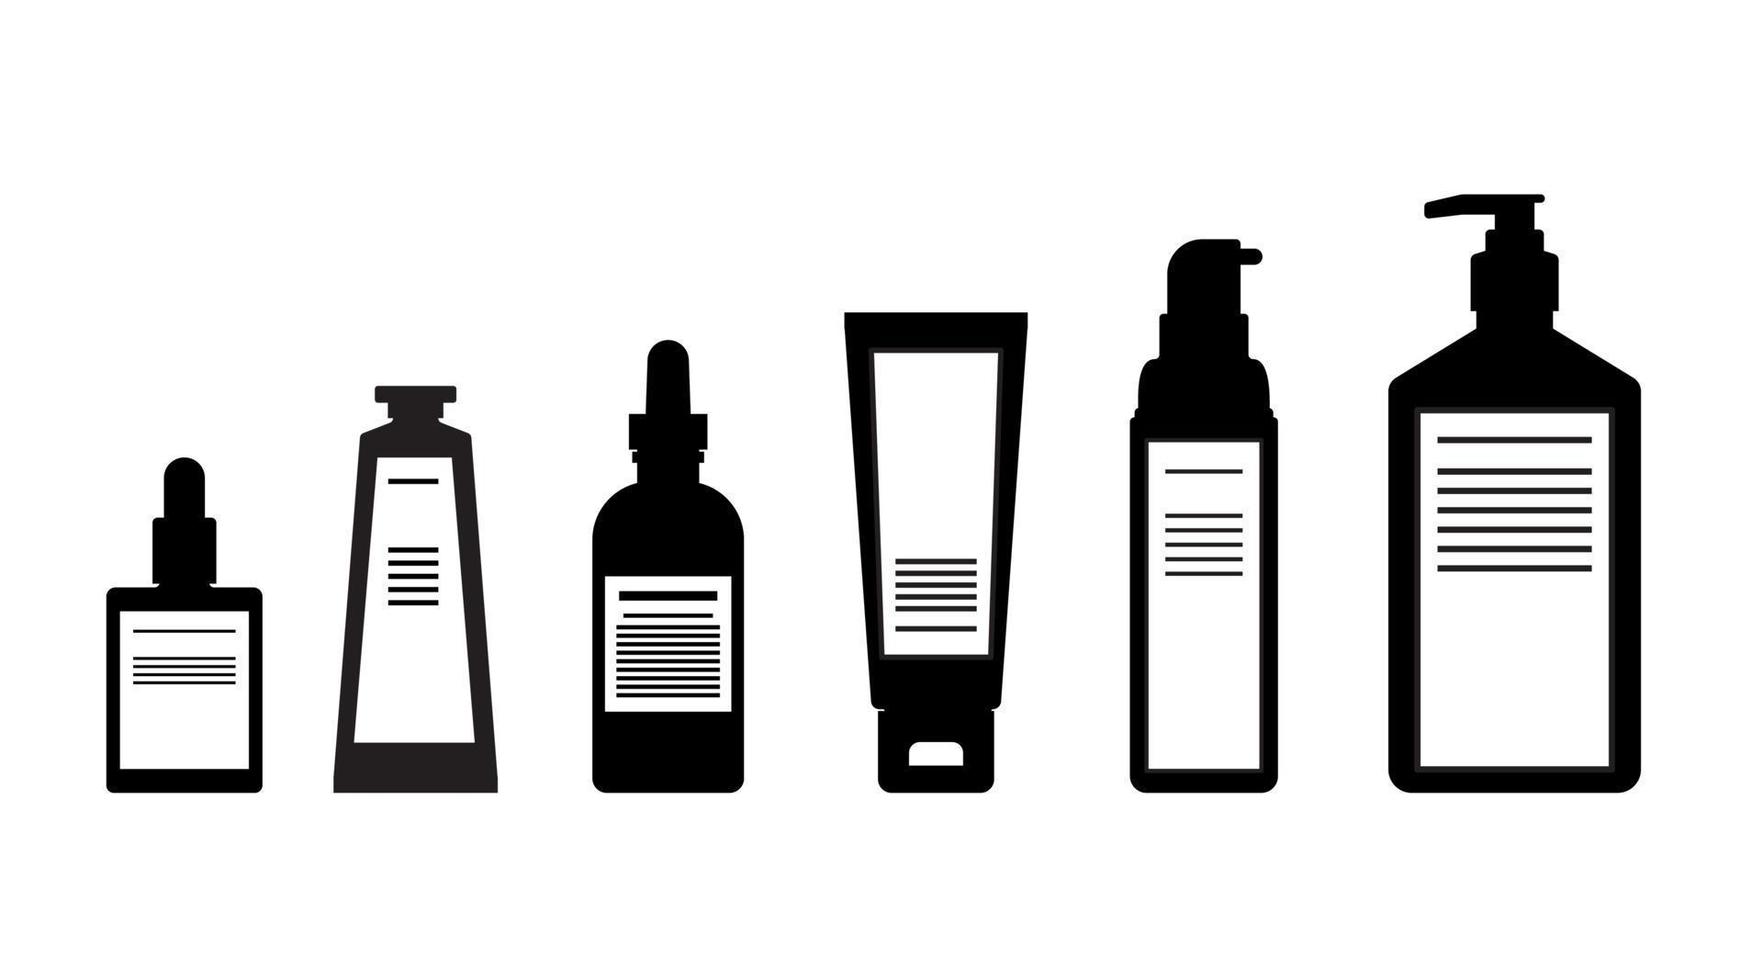 lotions pour le corps silhouette, sérum, pompe de soin de la peau, design plat cosmétique de bouteille d'emballage vecteur